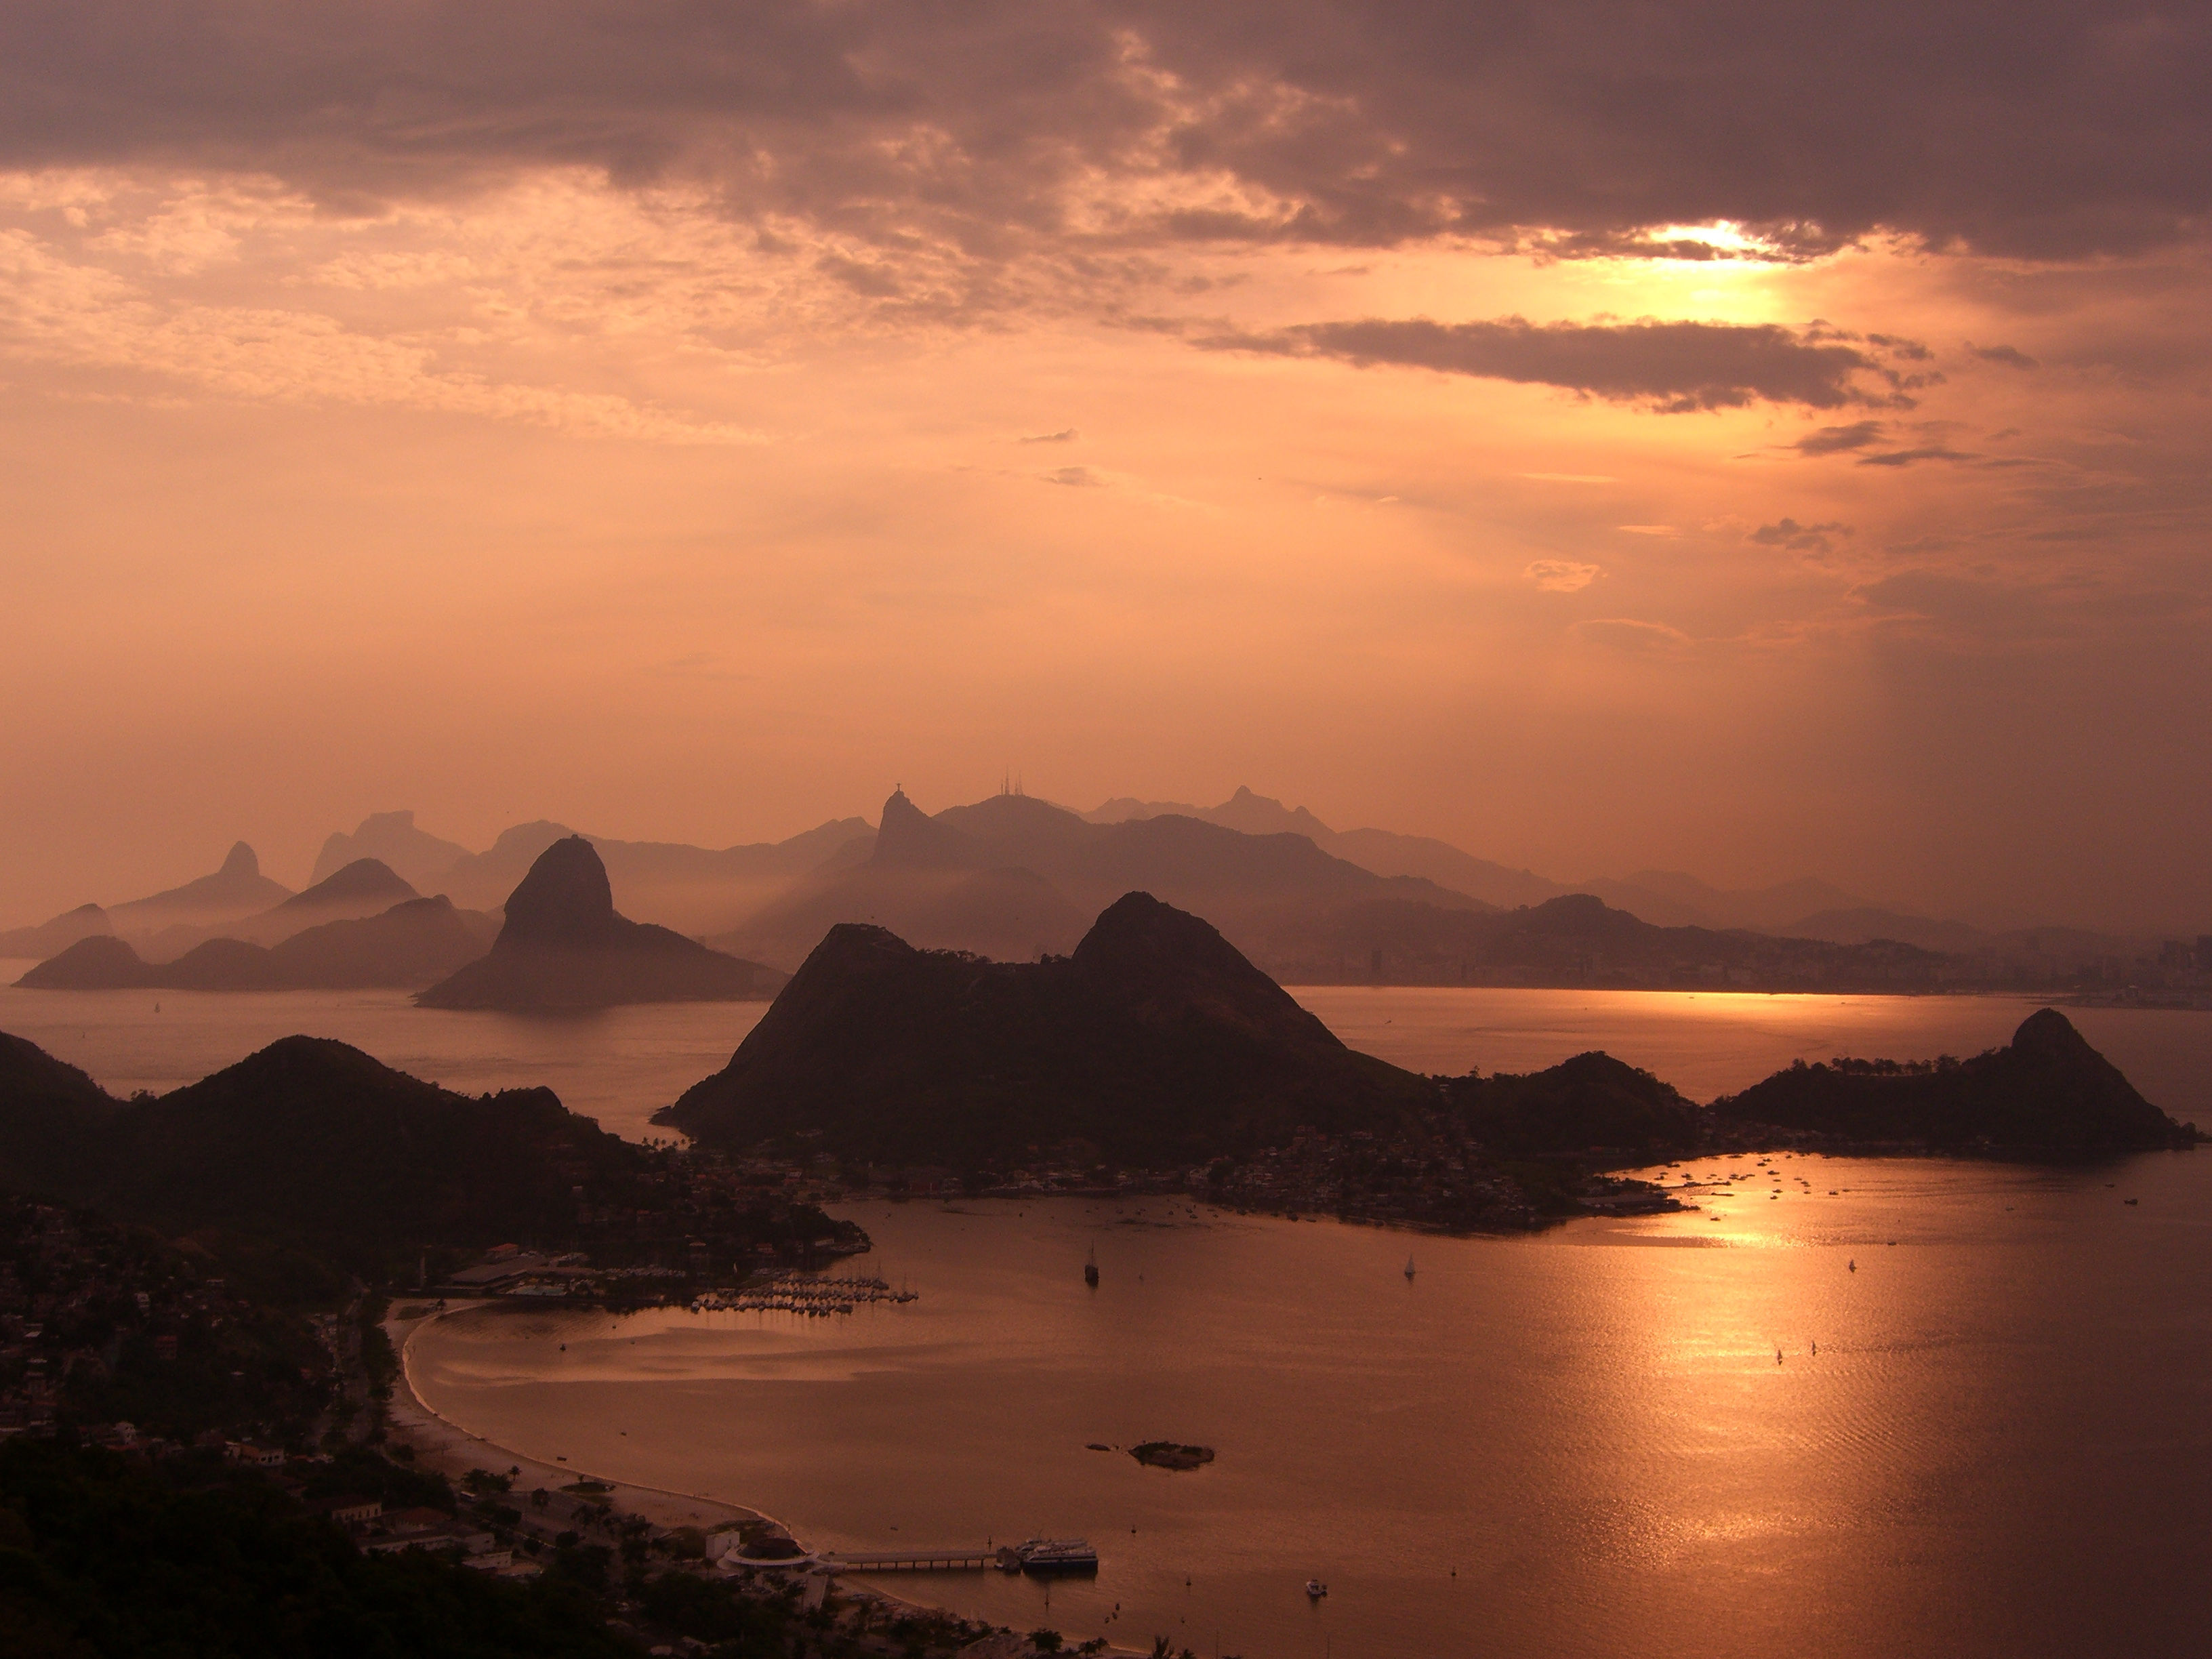 Crépuscule sur la baie de Rio